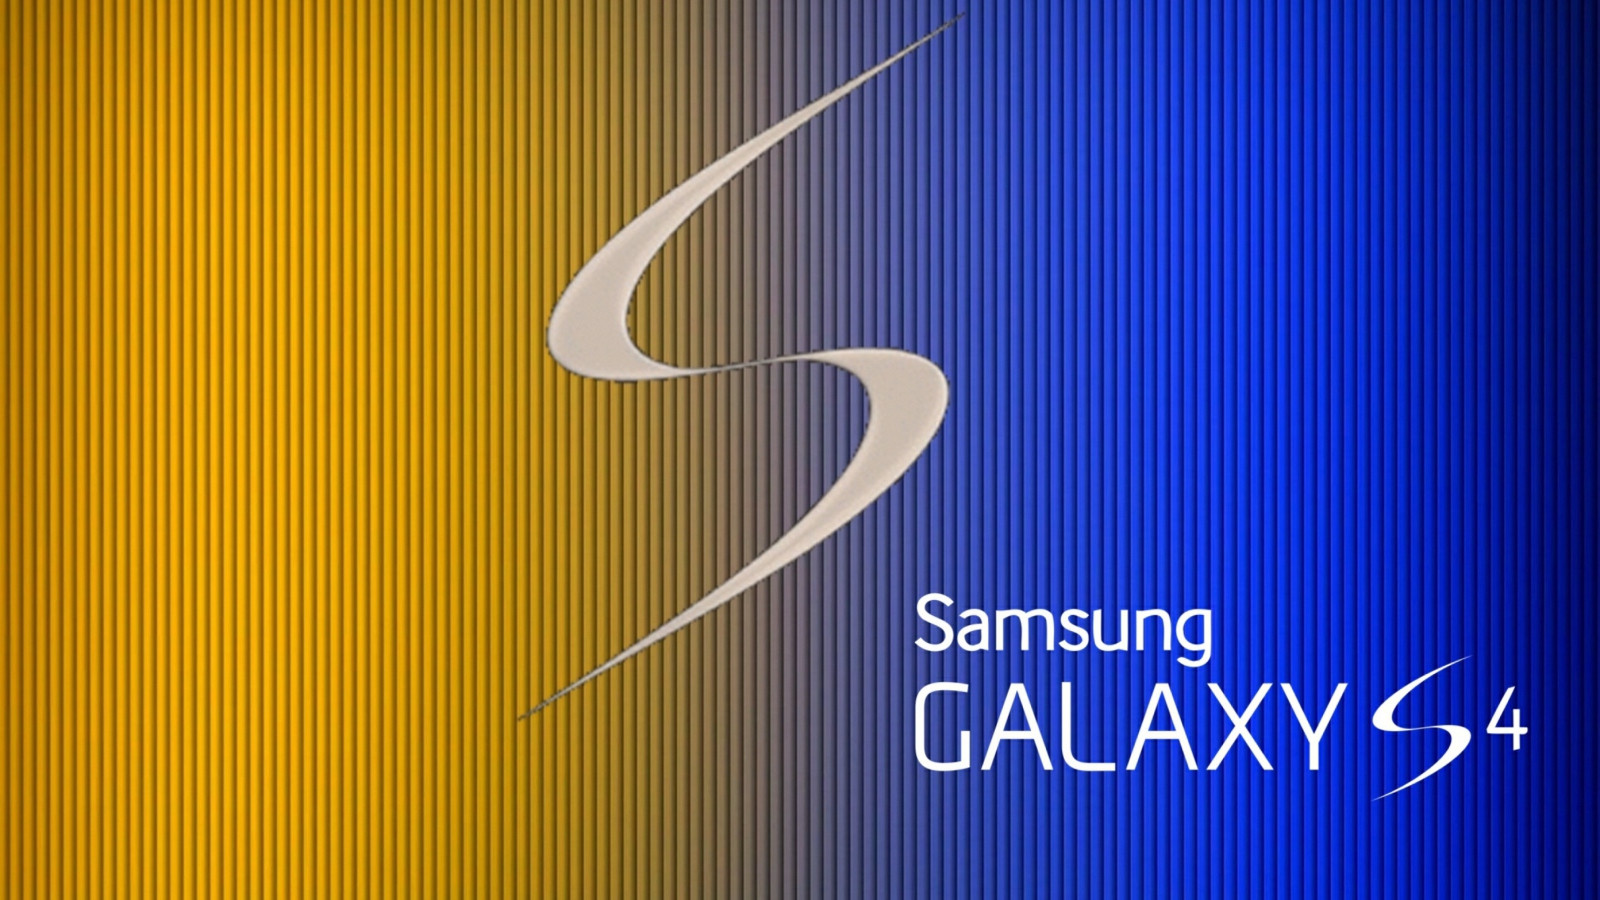 S Galaxy S4 wallpaper 1600x900